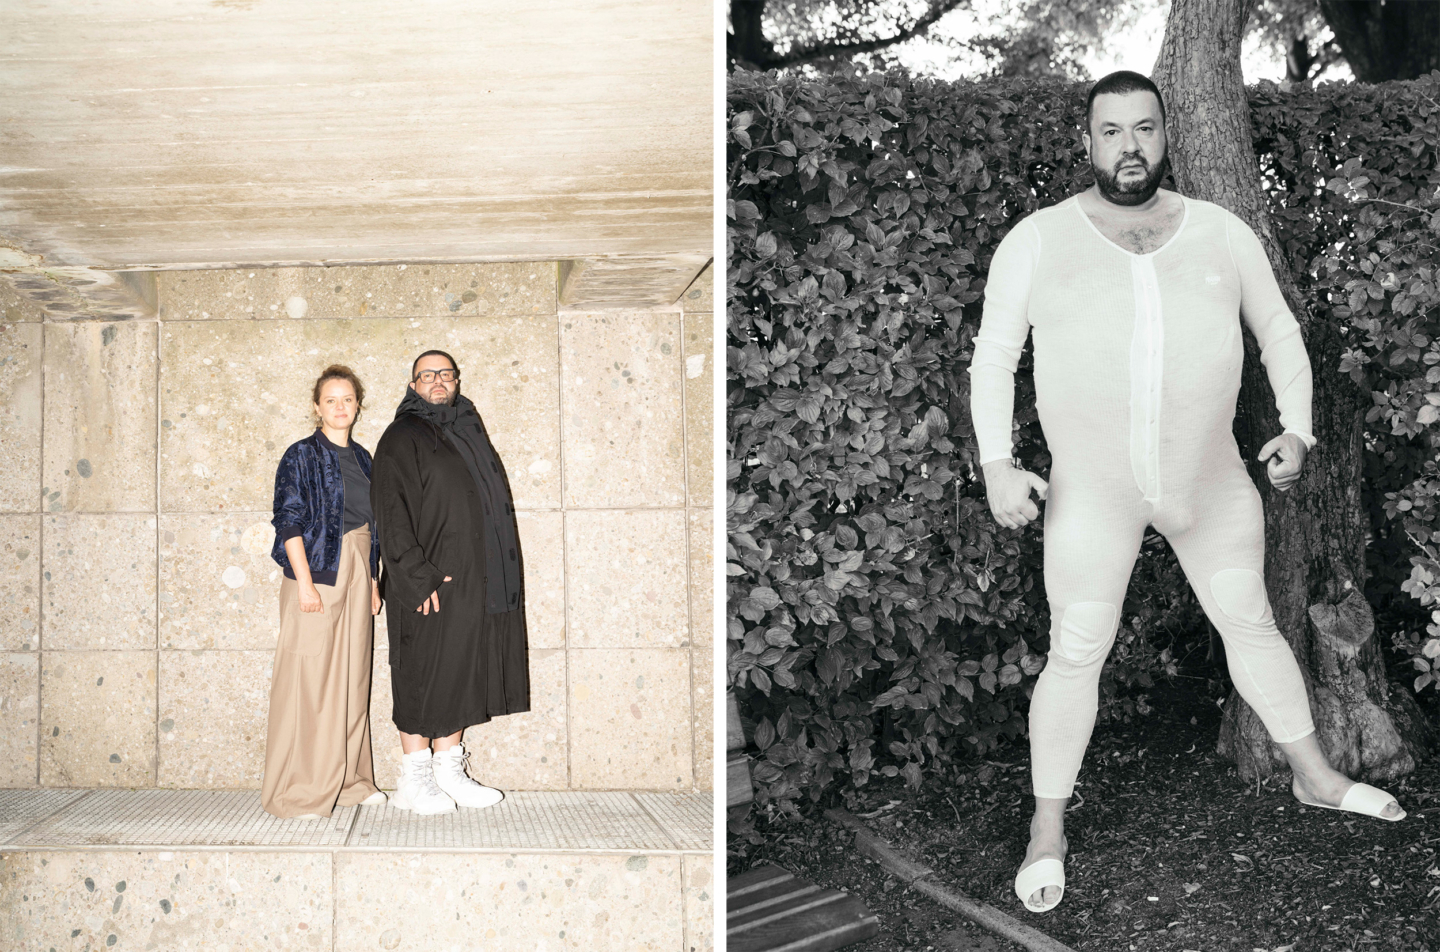 Julia von Heinz & Oliver Polak for Vogue Germany